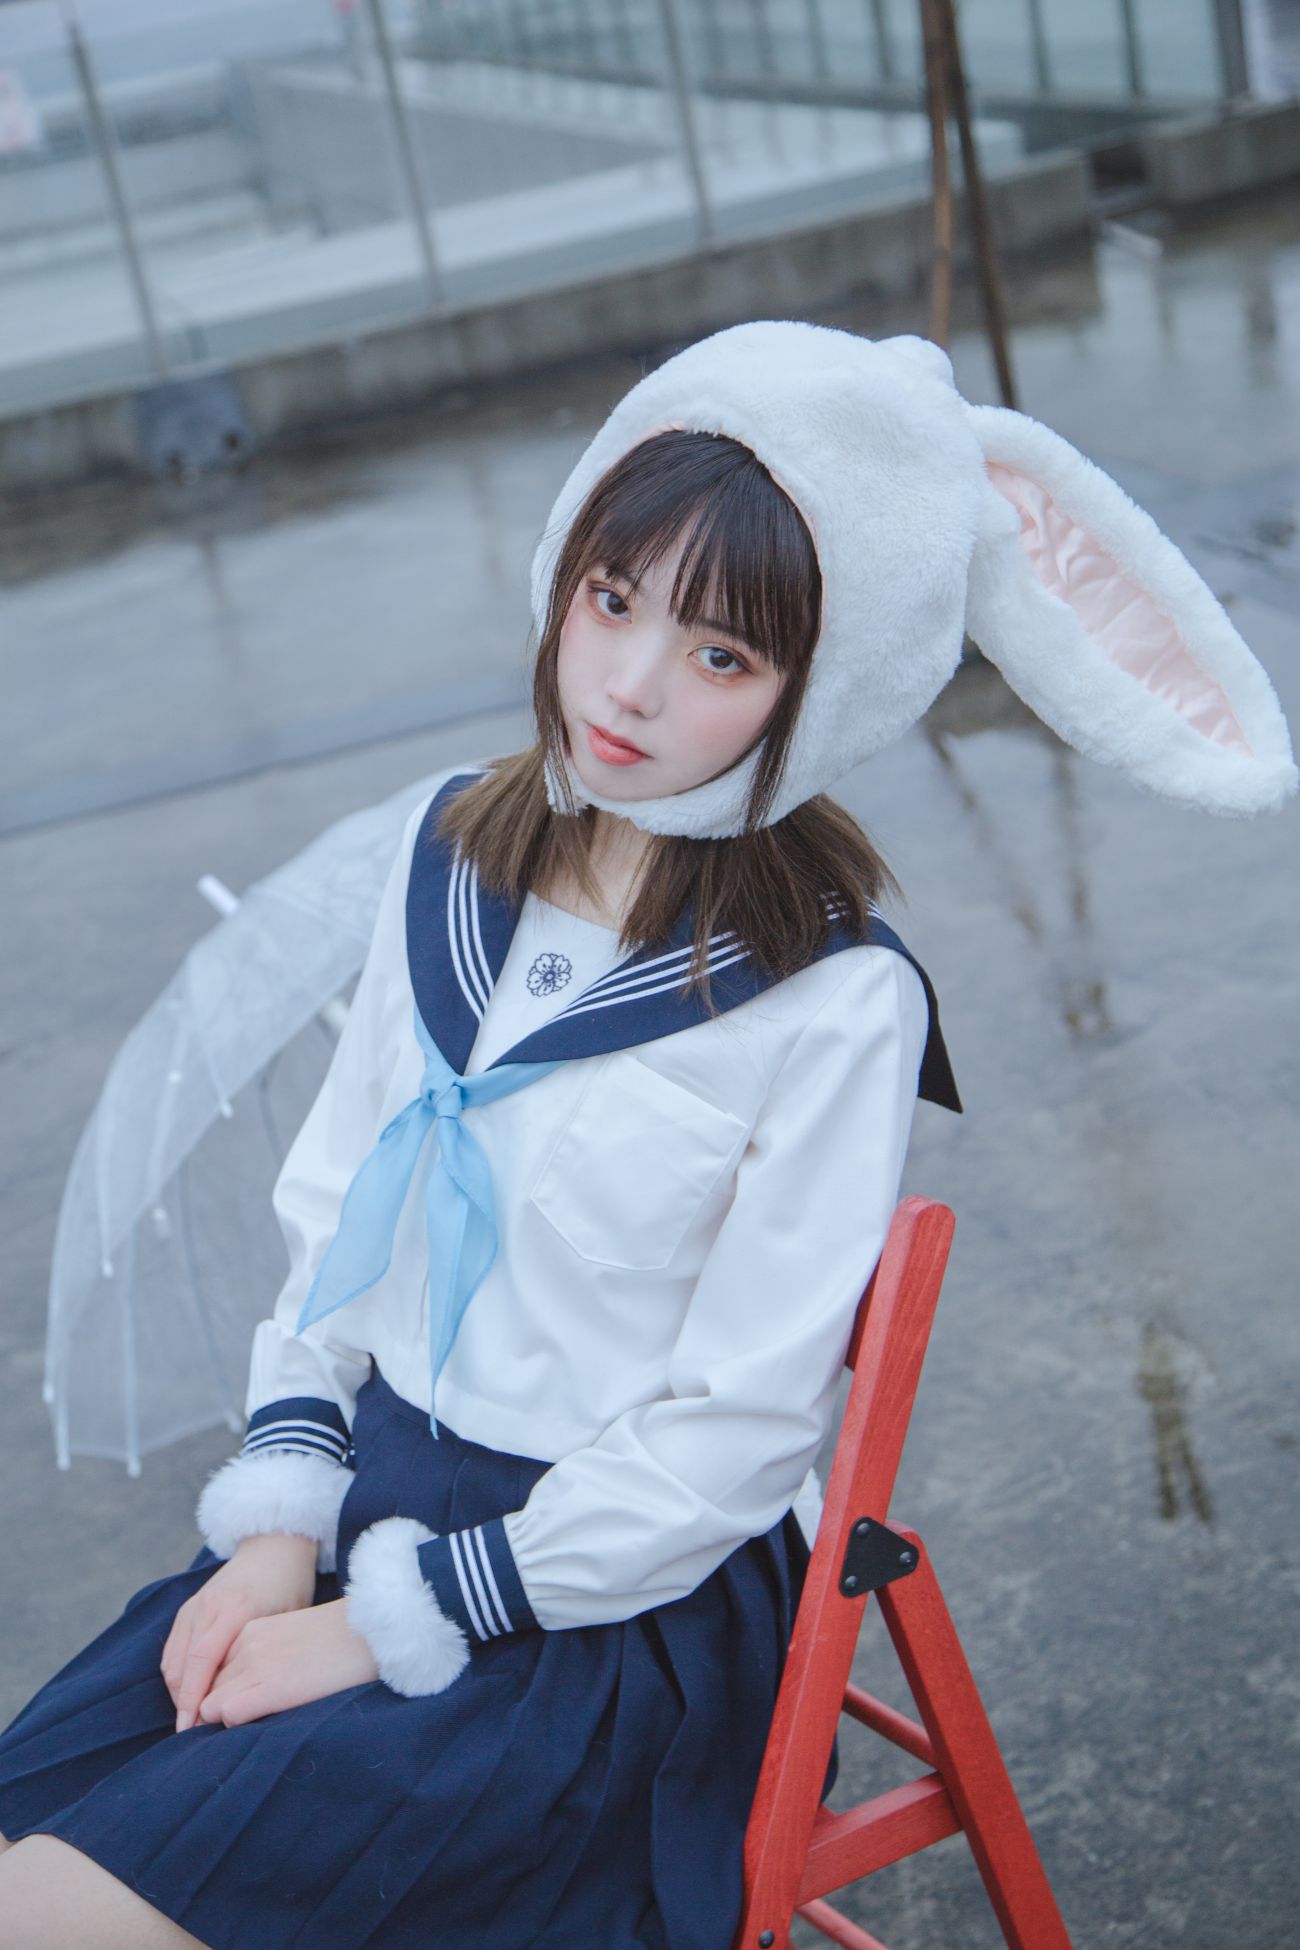 微博美少女Fushii海堂Cosplay性感写真兔兔头 (16)